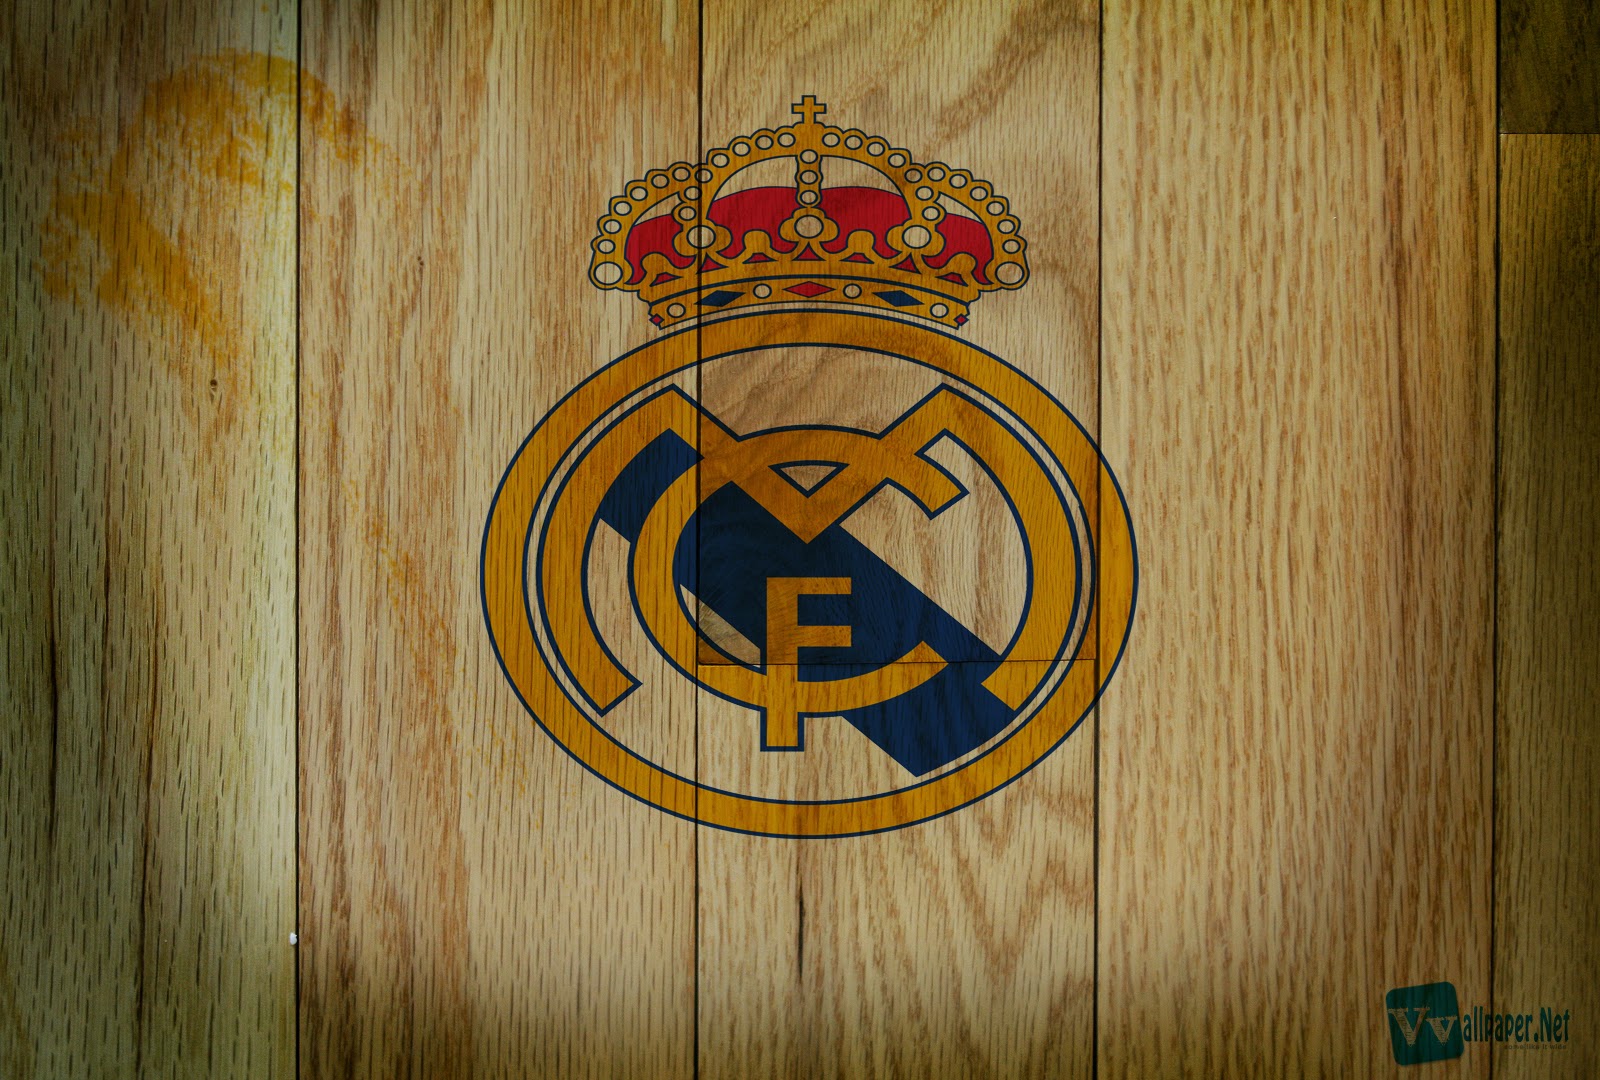 Real Madrid Football Club Wallpaper Tealoasis